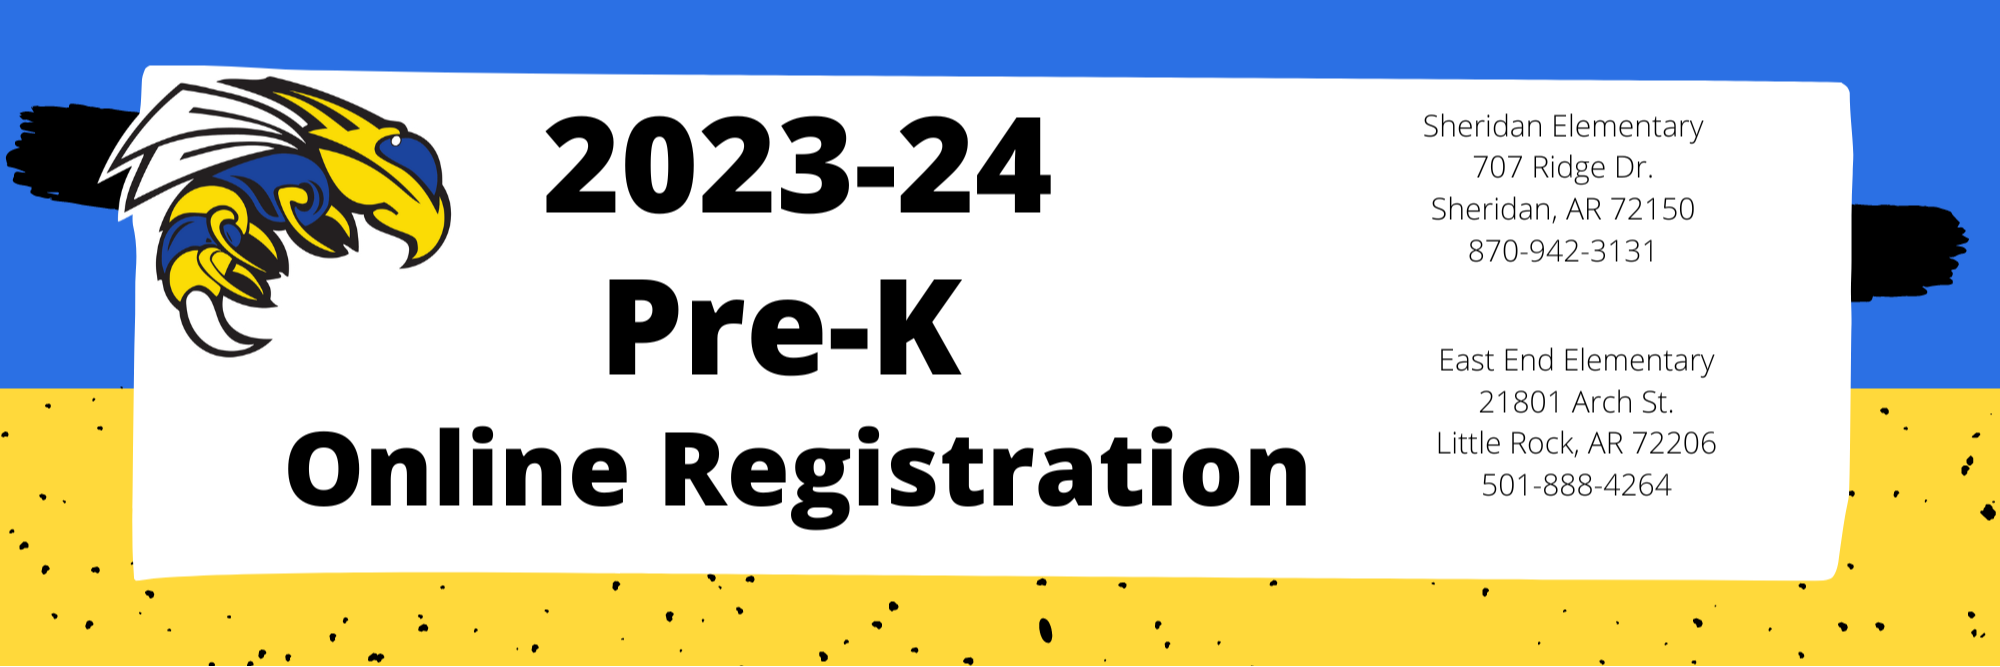 PRE-K REGISTRATION 